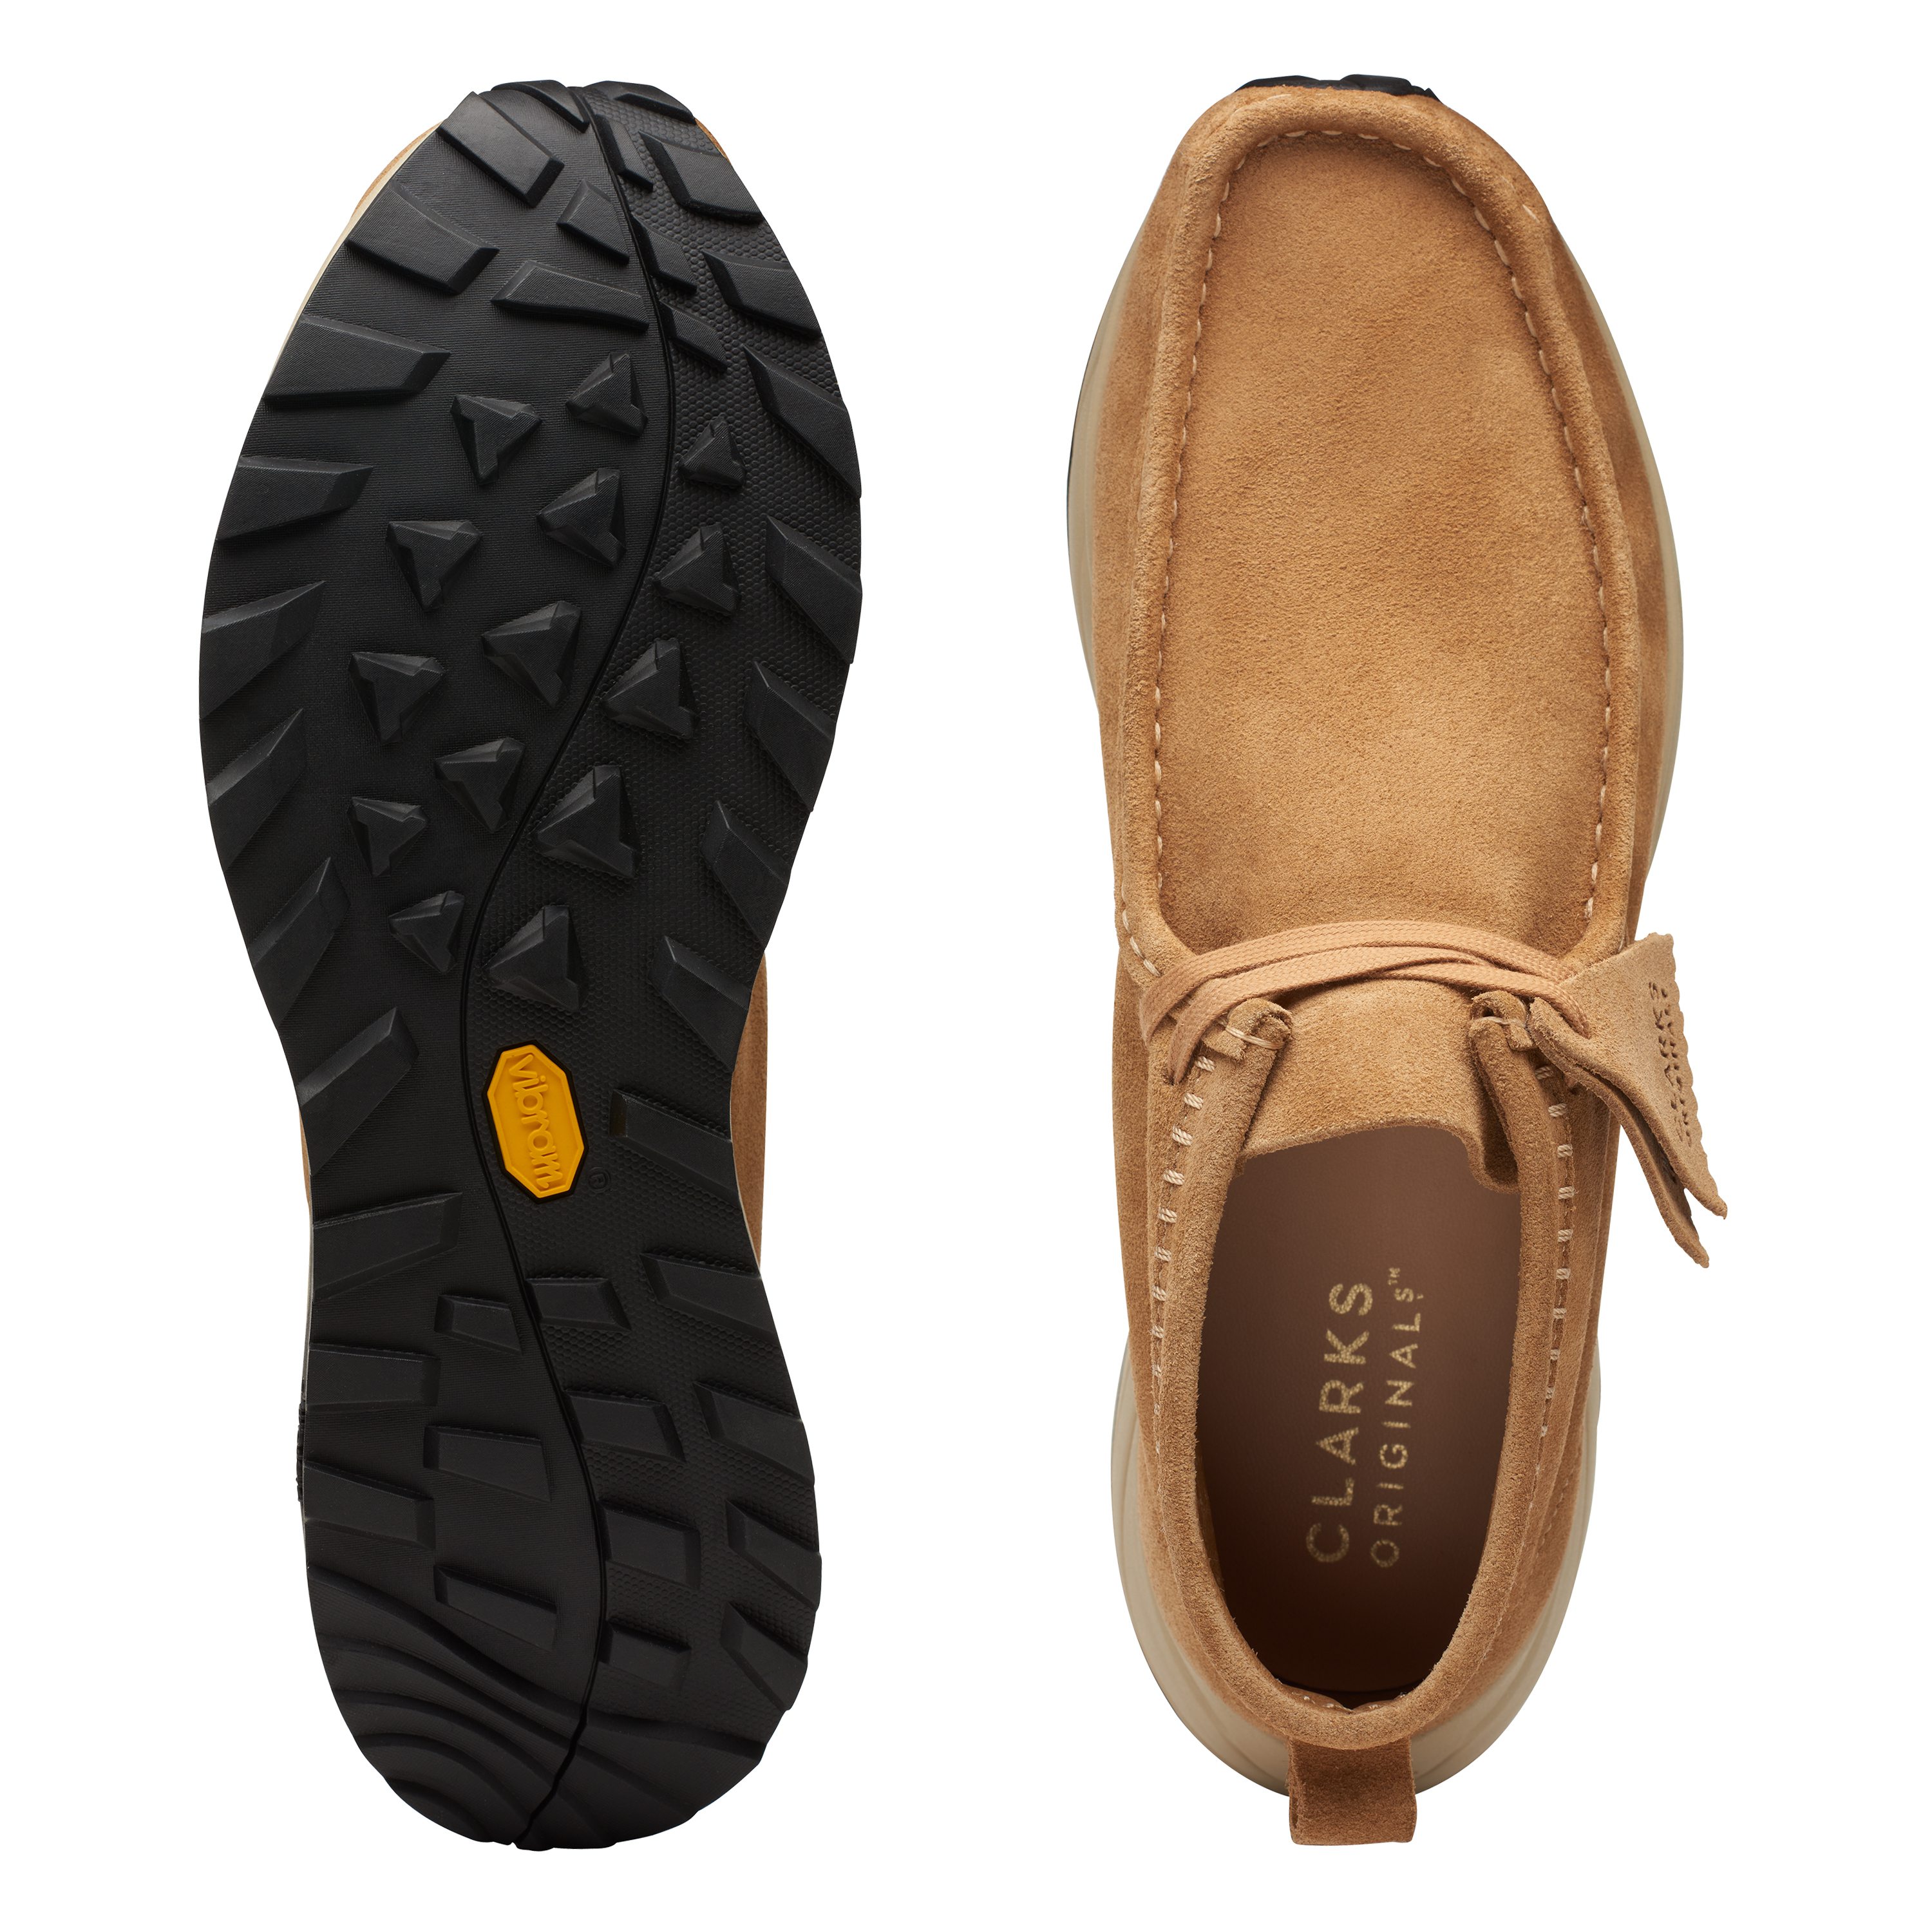 Clarks Wallabee Eden Sneaker Boot - Dark Sand Suede | Trail